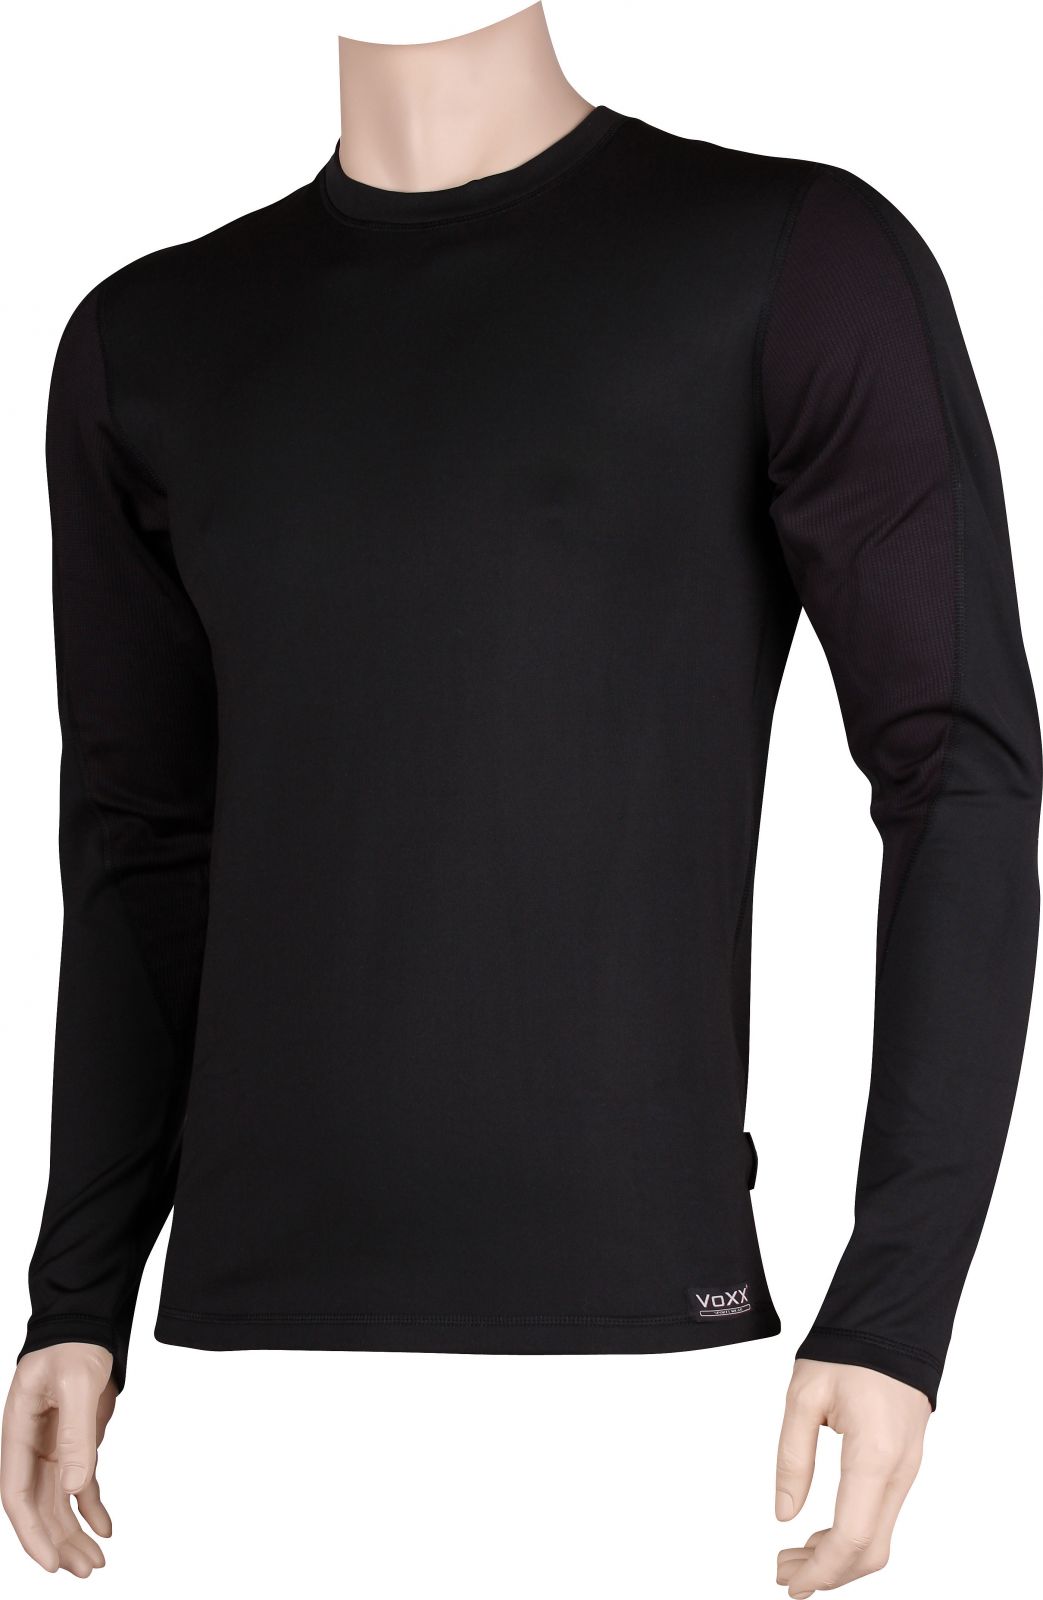 VoXX® SOLID 01 pánské tričko dlouhý rukáv černá/černá